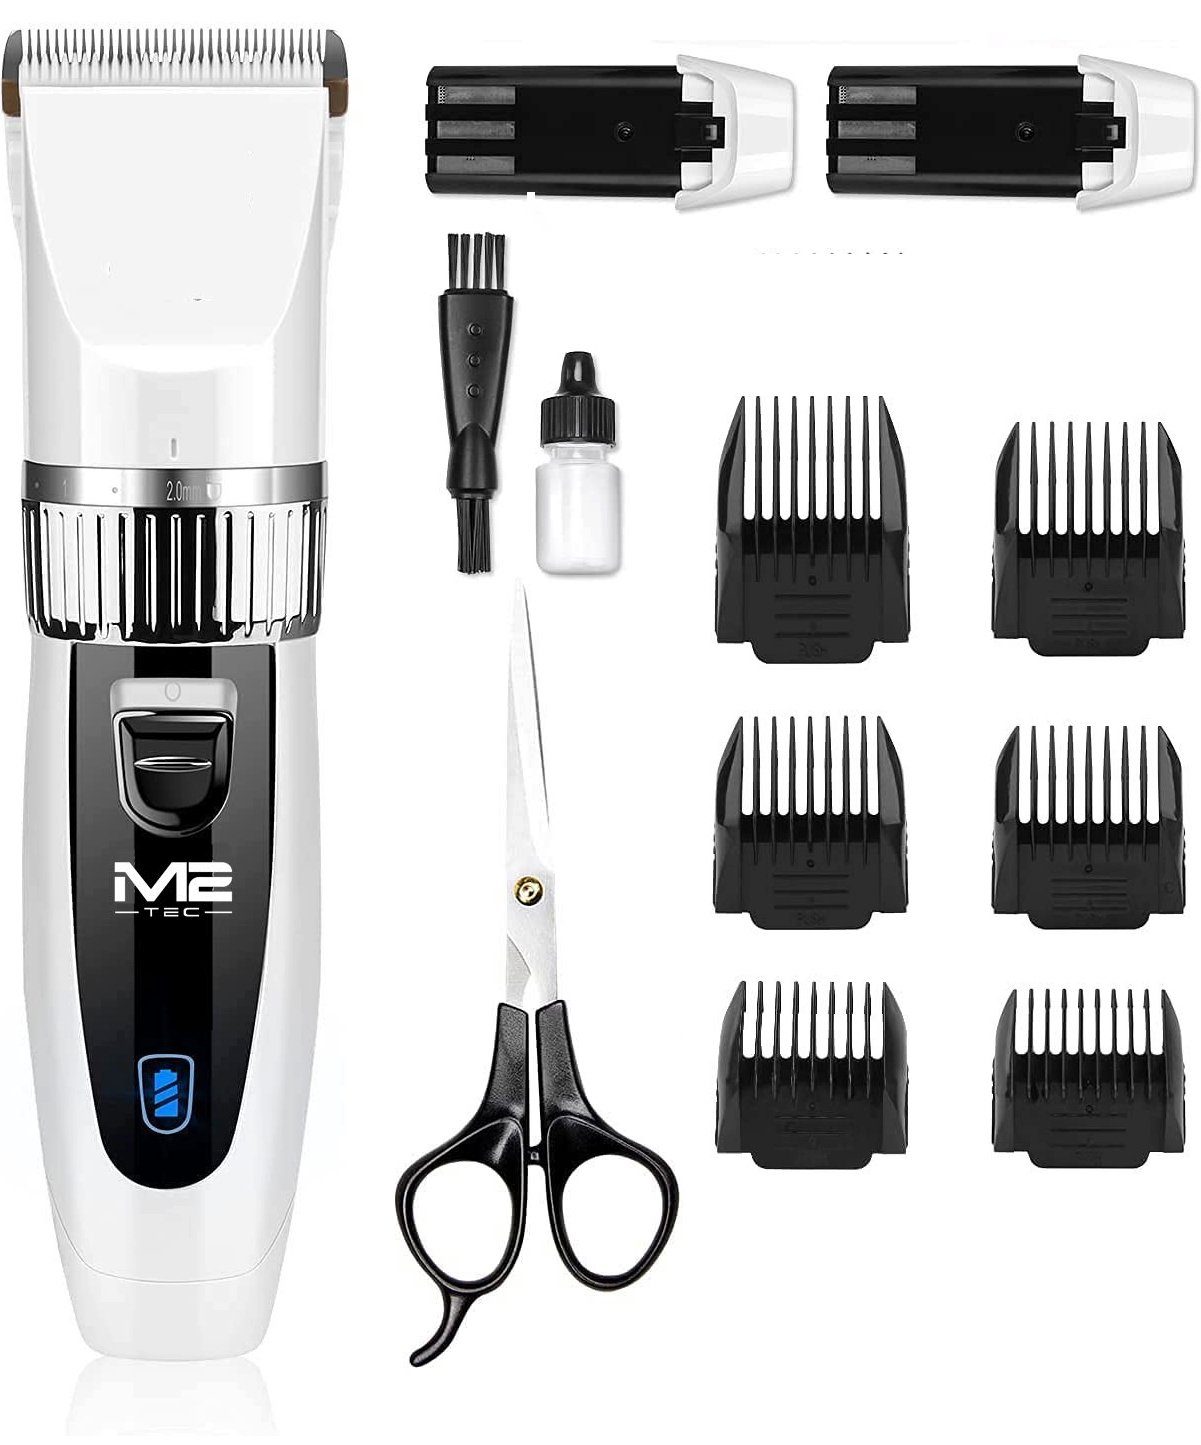 M2-Tec Haarschneider RFC-208B, Haarschneide-Set, Netz/Akku,  Fein-Schnittlängeneinstellung online kaufen | OTTO